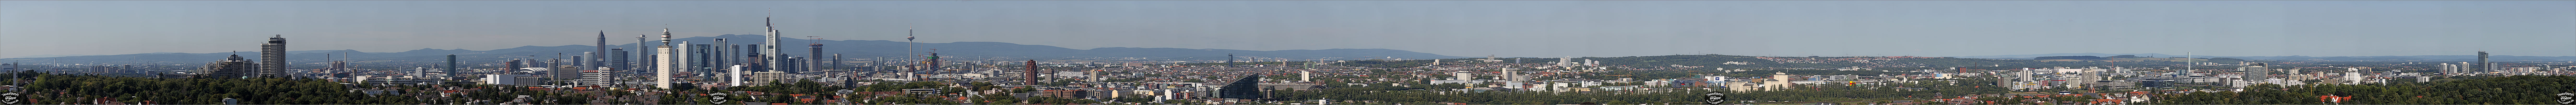 Panorama Frankfurt - Die Skyline vom Goetheturm aus gesehen - p300 - (c) by Oliver Opper